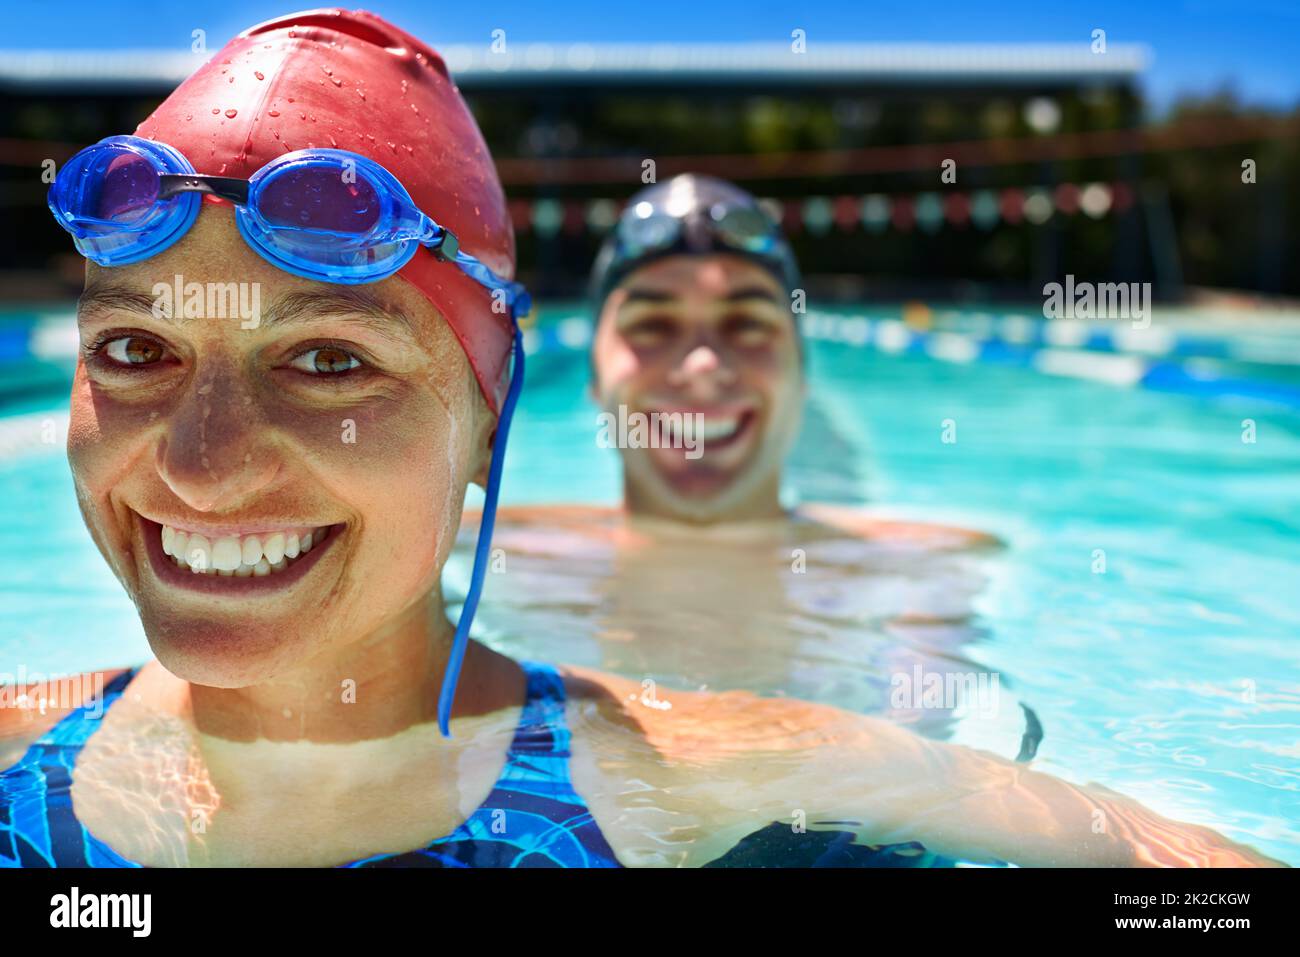 Concorrenza amichevole. Due nuotatori sorridenti in piscina. Foto Stock